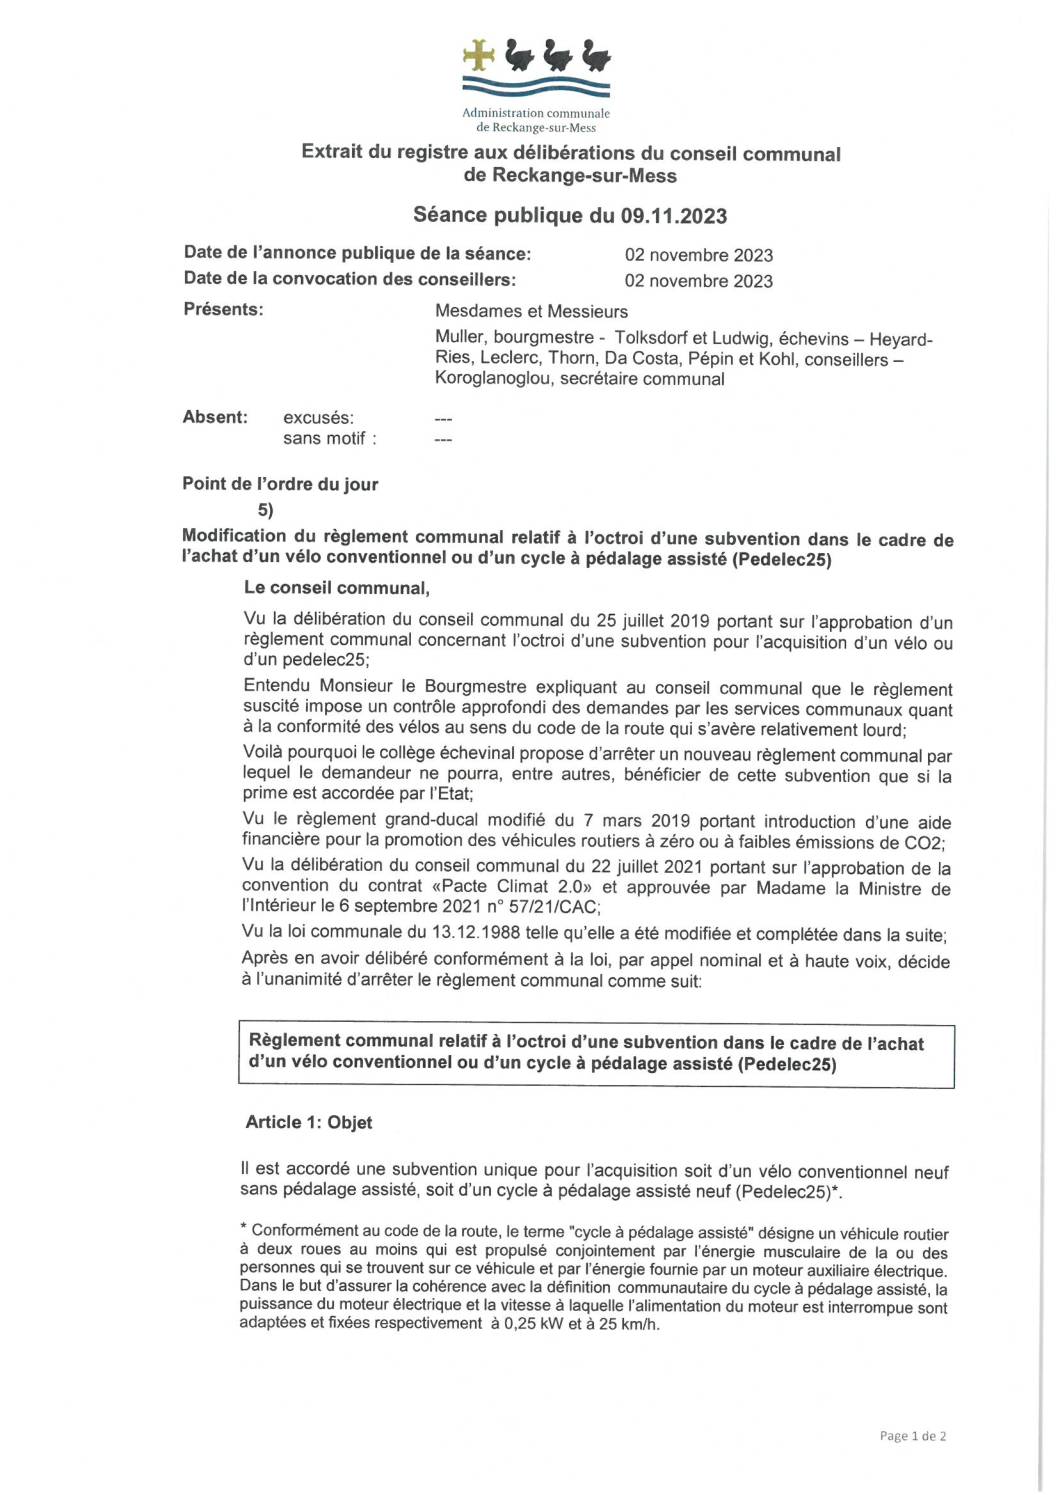 RC - Subvention pour vélo et Pedelec25 (01.01.2024)